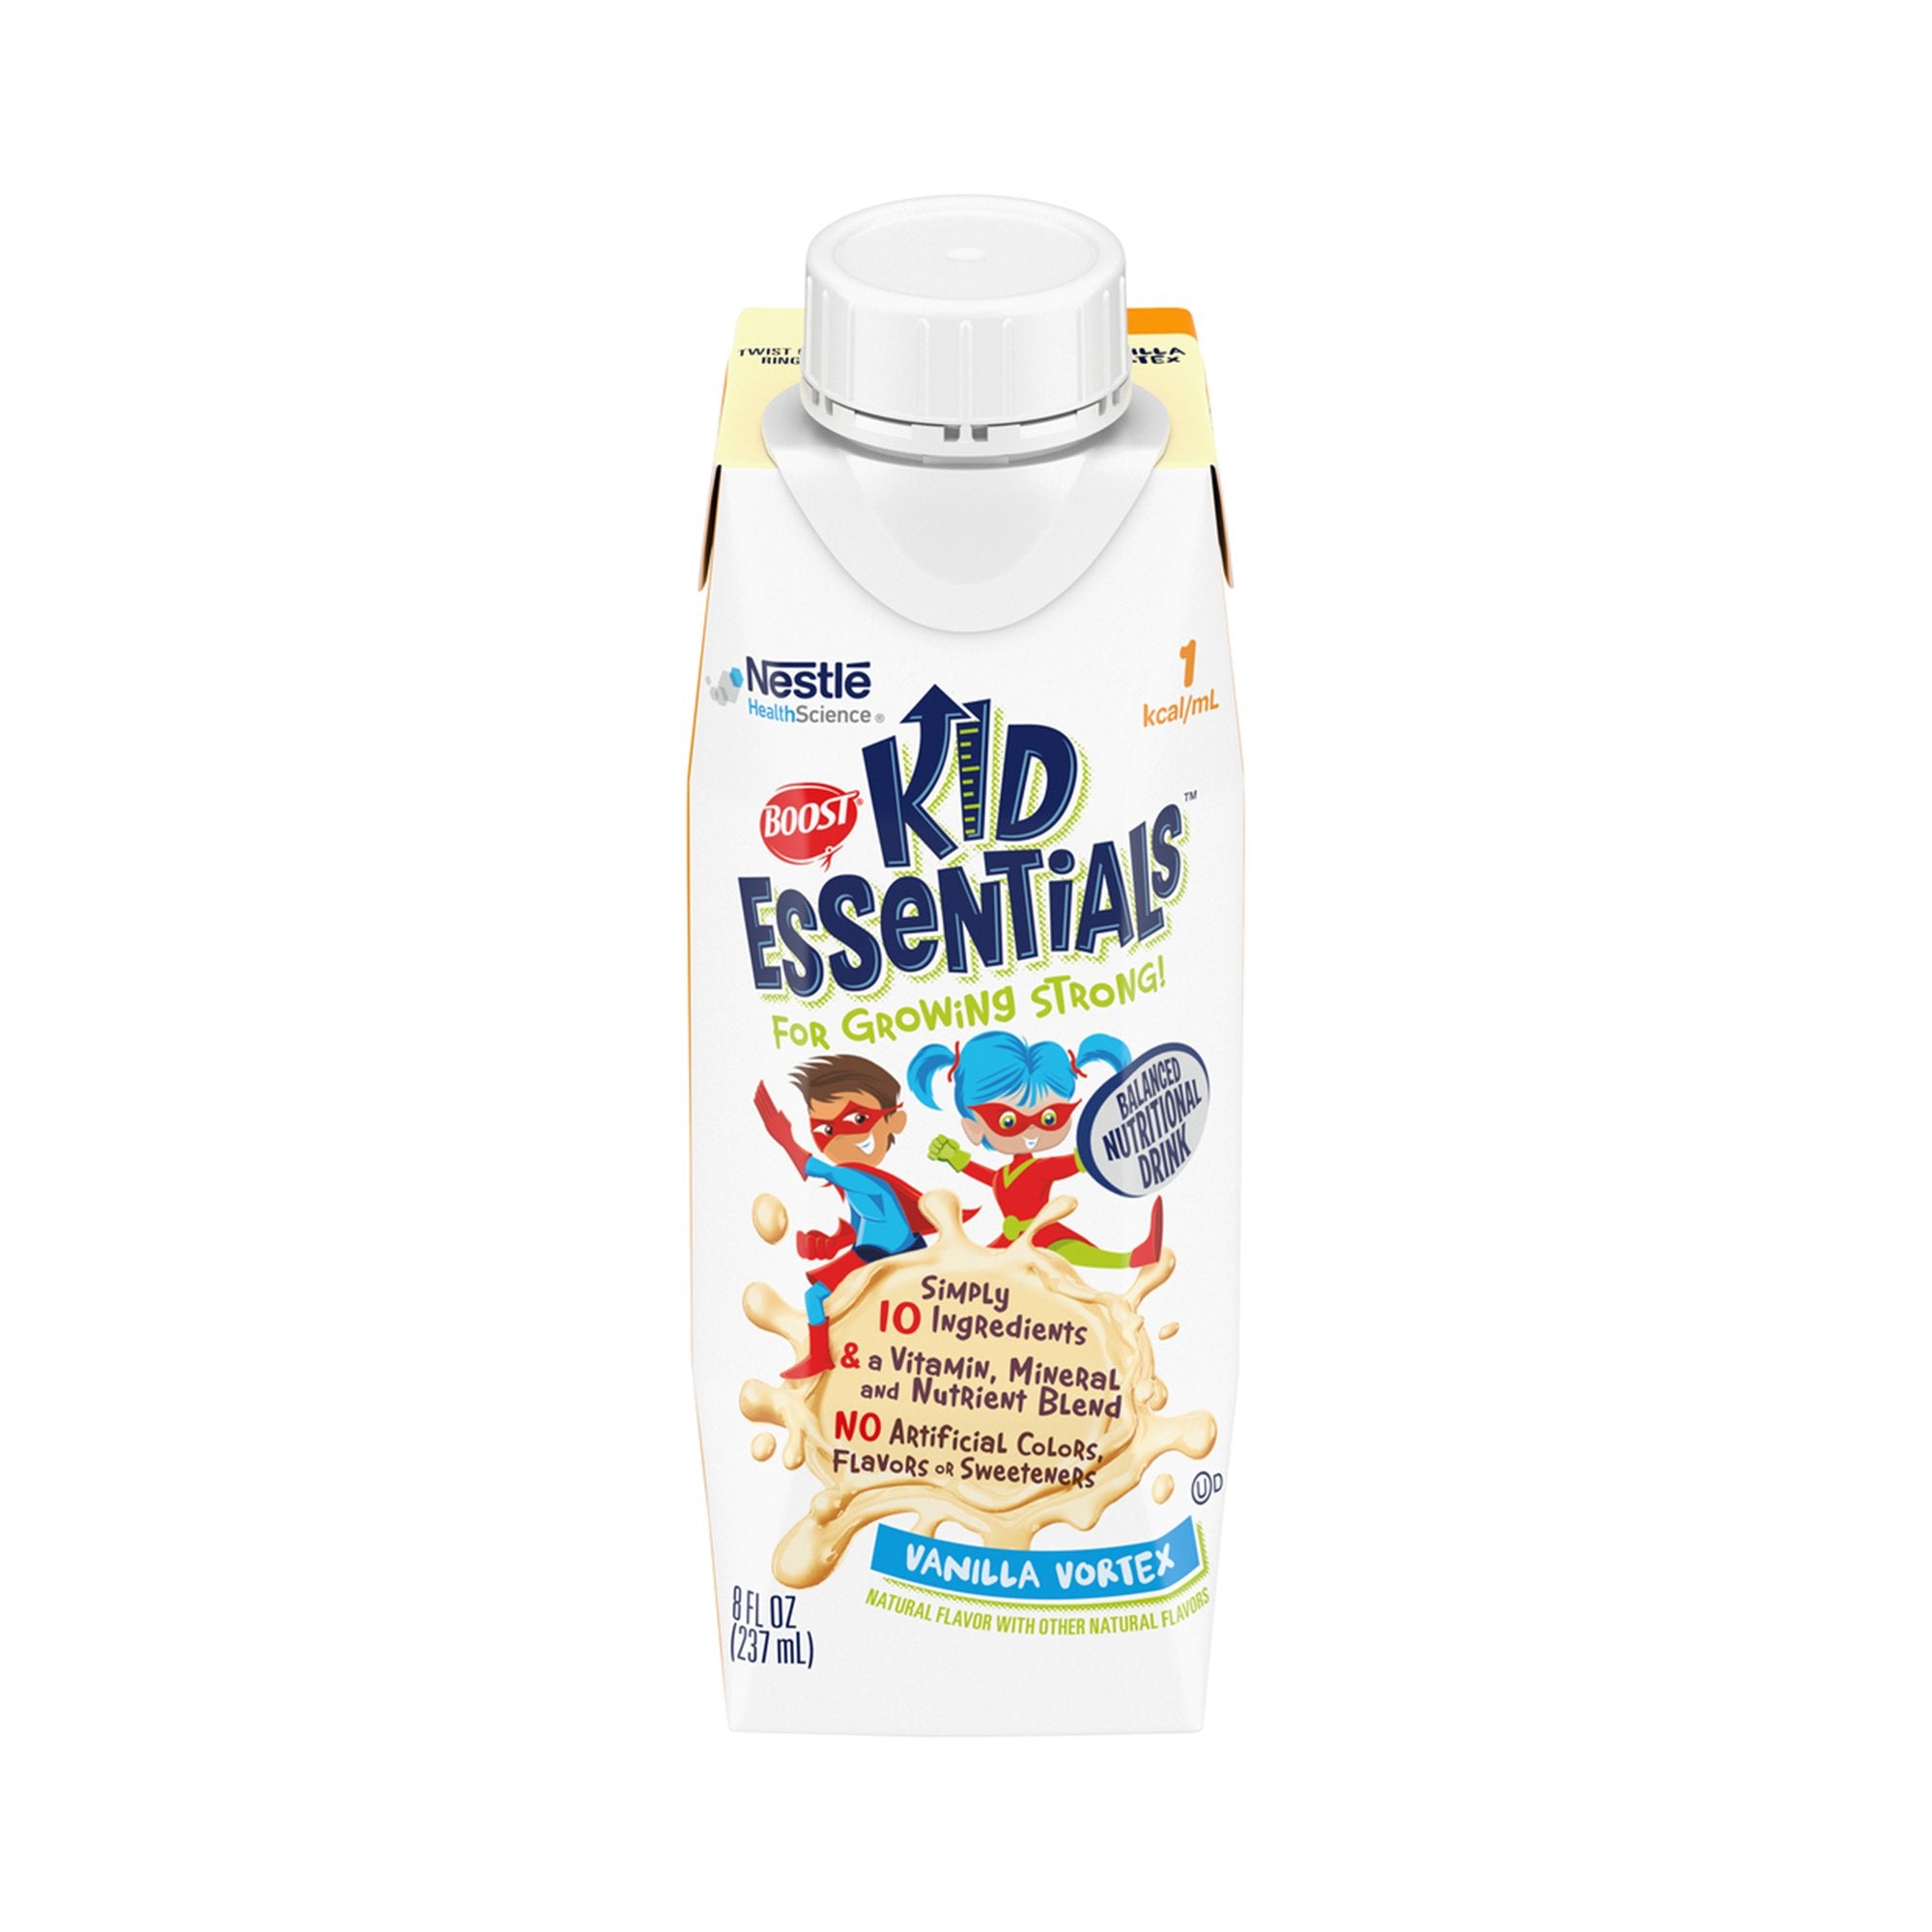 Boost Kid Essentials 1.0 Vanilla Vortex Flavor Oral Supplement, 8 oz (24 Pack)